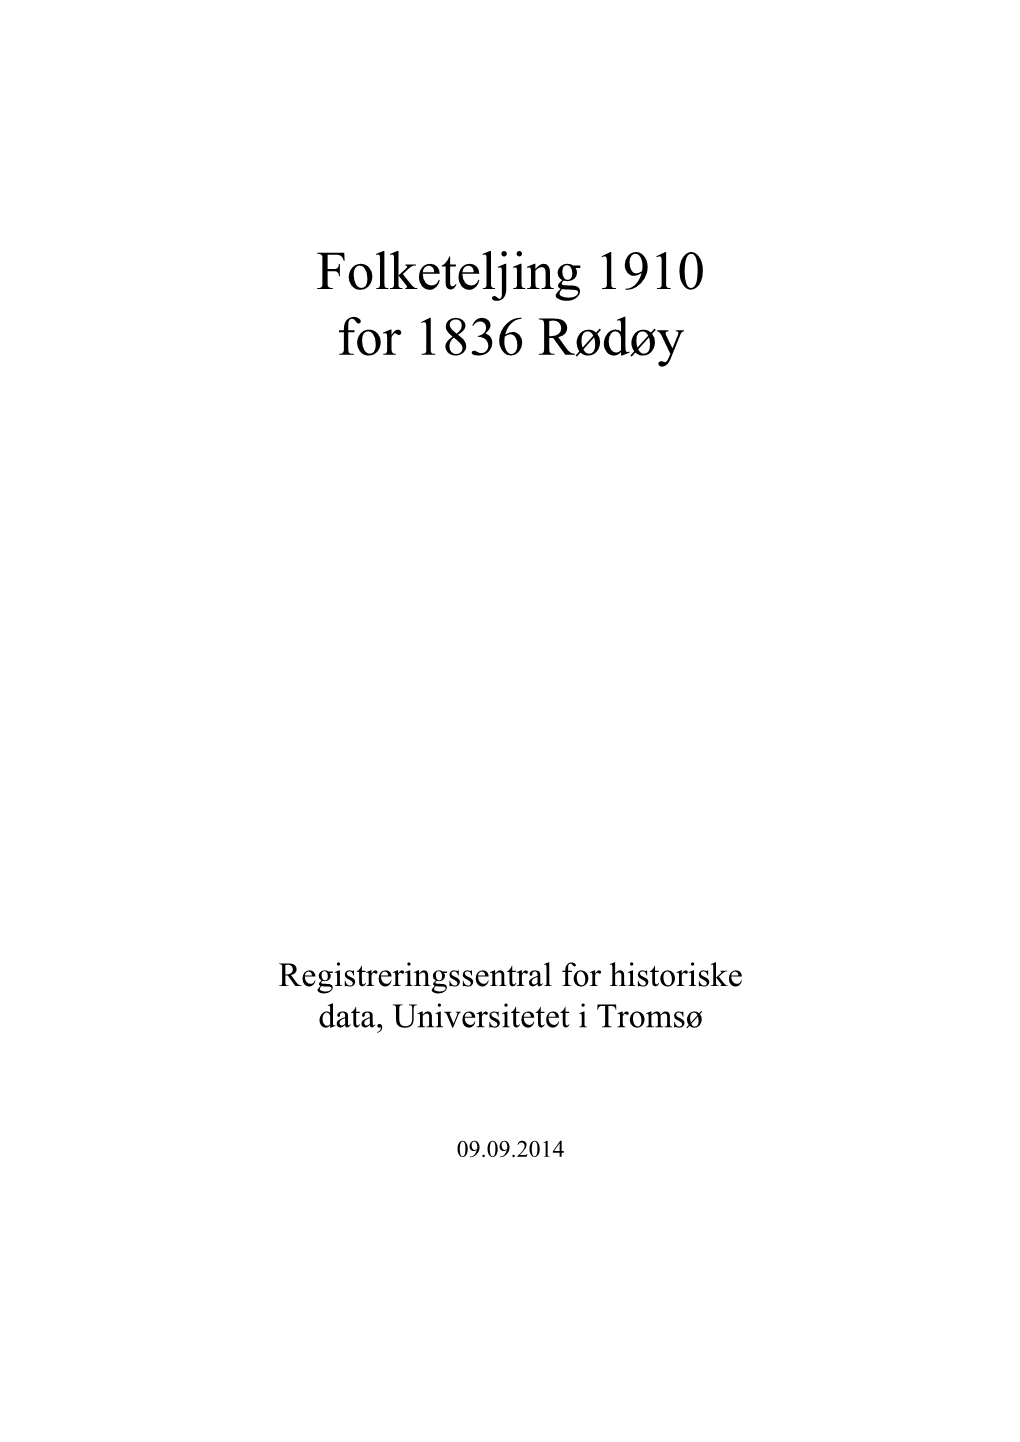 Folketeljing 1910 for 1836 Rødøy